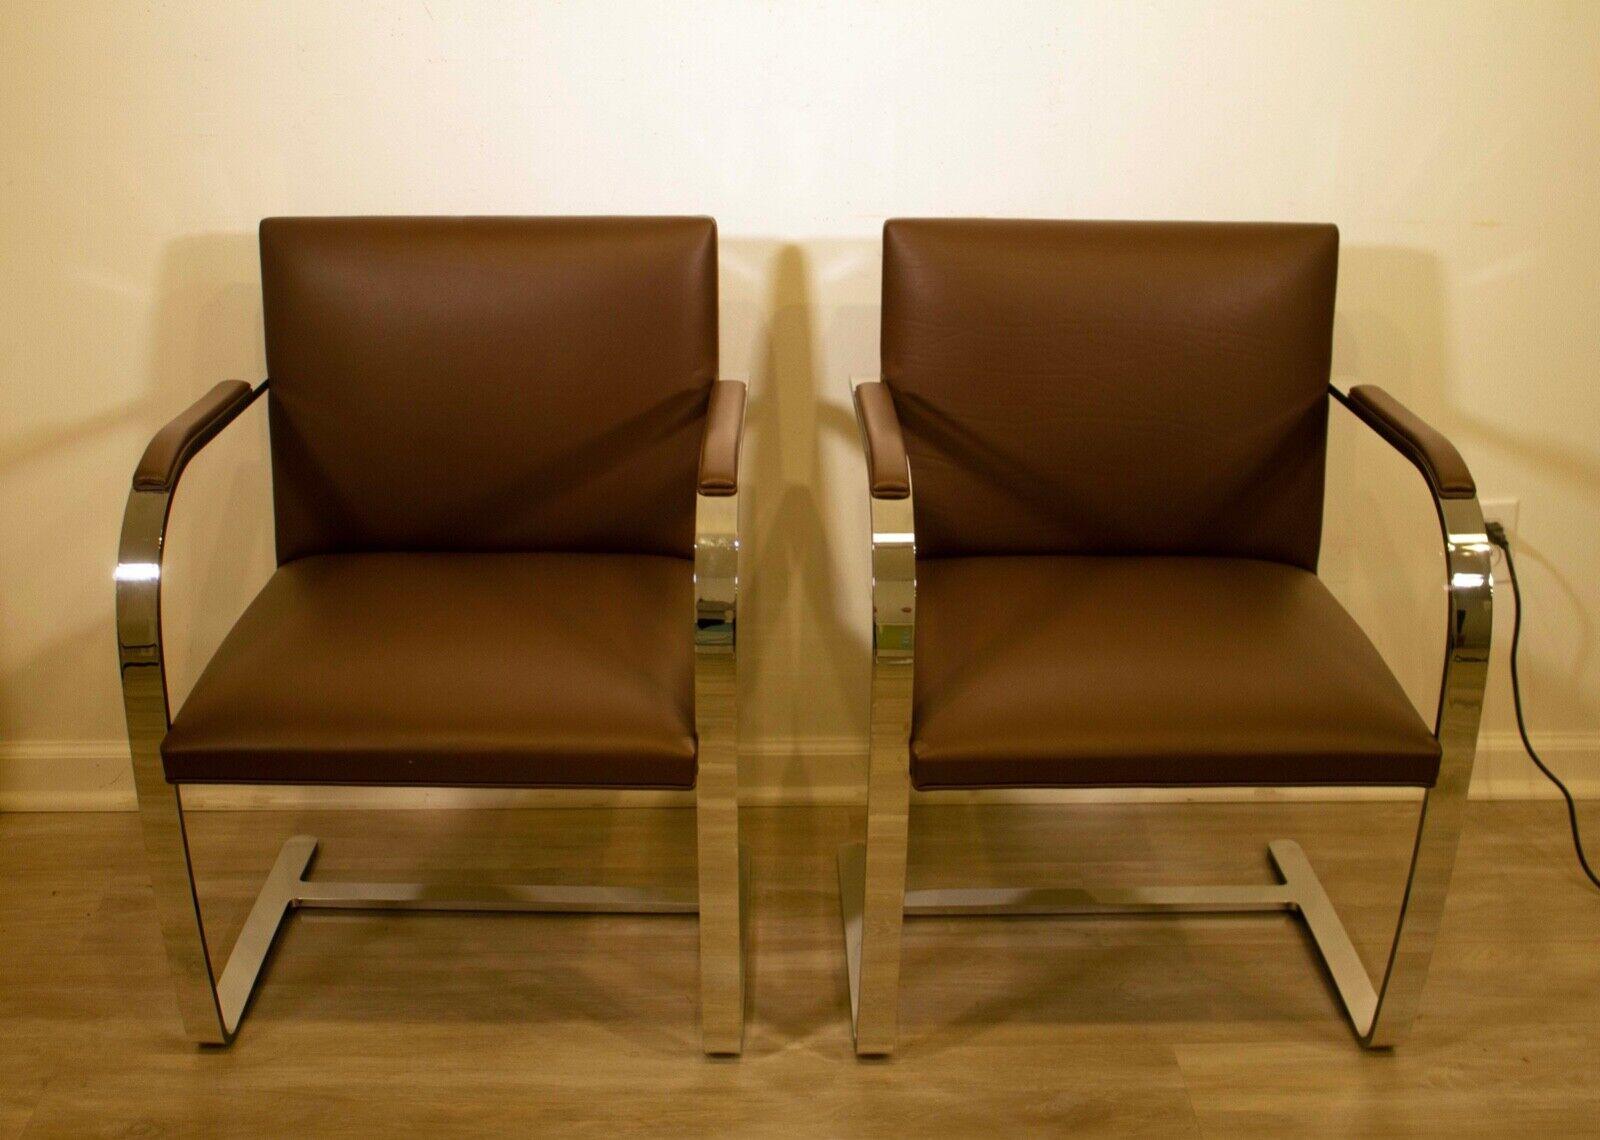 La chaise Brno est un modèle intemporel de Ludwig Mies van der Rohe qui a été salué pour sa simplicité, son élégance et son confort. Cette itération contemporaine de la chaise présente une structure en acier chromé et un revêtement en cuir marron.